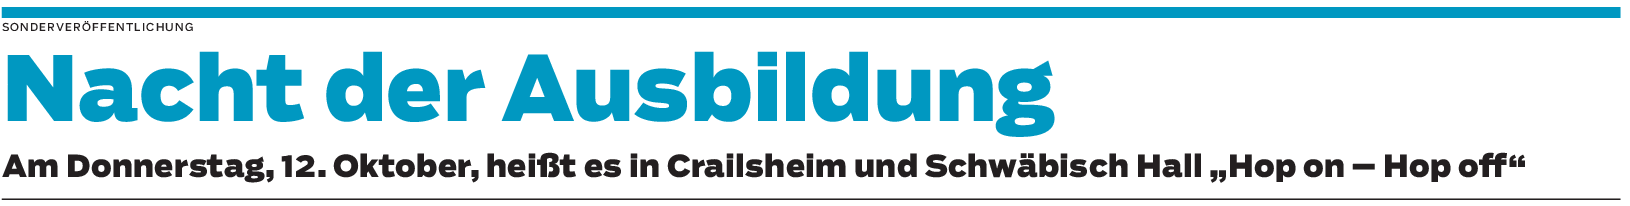 Schwäbisch Hall und Crailsheim: Auf verschiedenen Busrouten in Richtung Zukunft starten